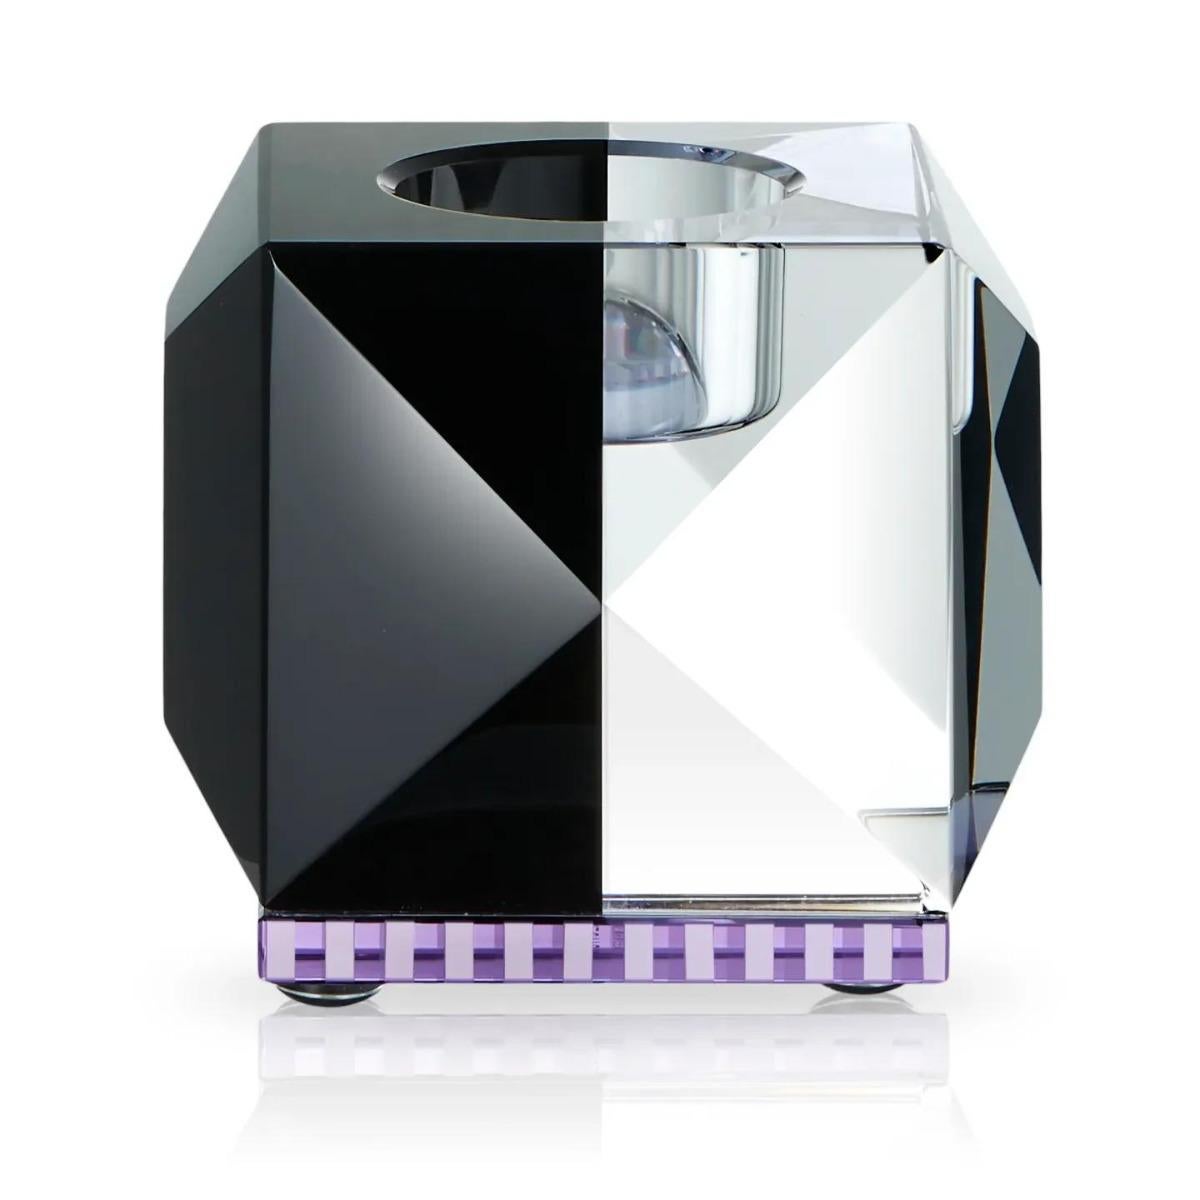 Kristallkerzenhalter, Modell OPH II, 21. Jahrhundert.

Kristallkerzenhalter in zwei Farben erhältlich: Transparent/Braun/Gelb, Transparent/Bernstein, Transparent/Rosa und Transparent/Schwarz. Jeder Kristall-Kerzenhalter ist ein Kunstwerk für sich